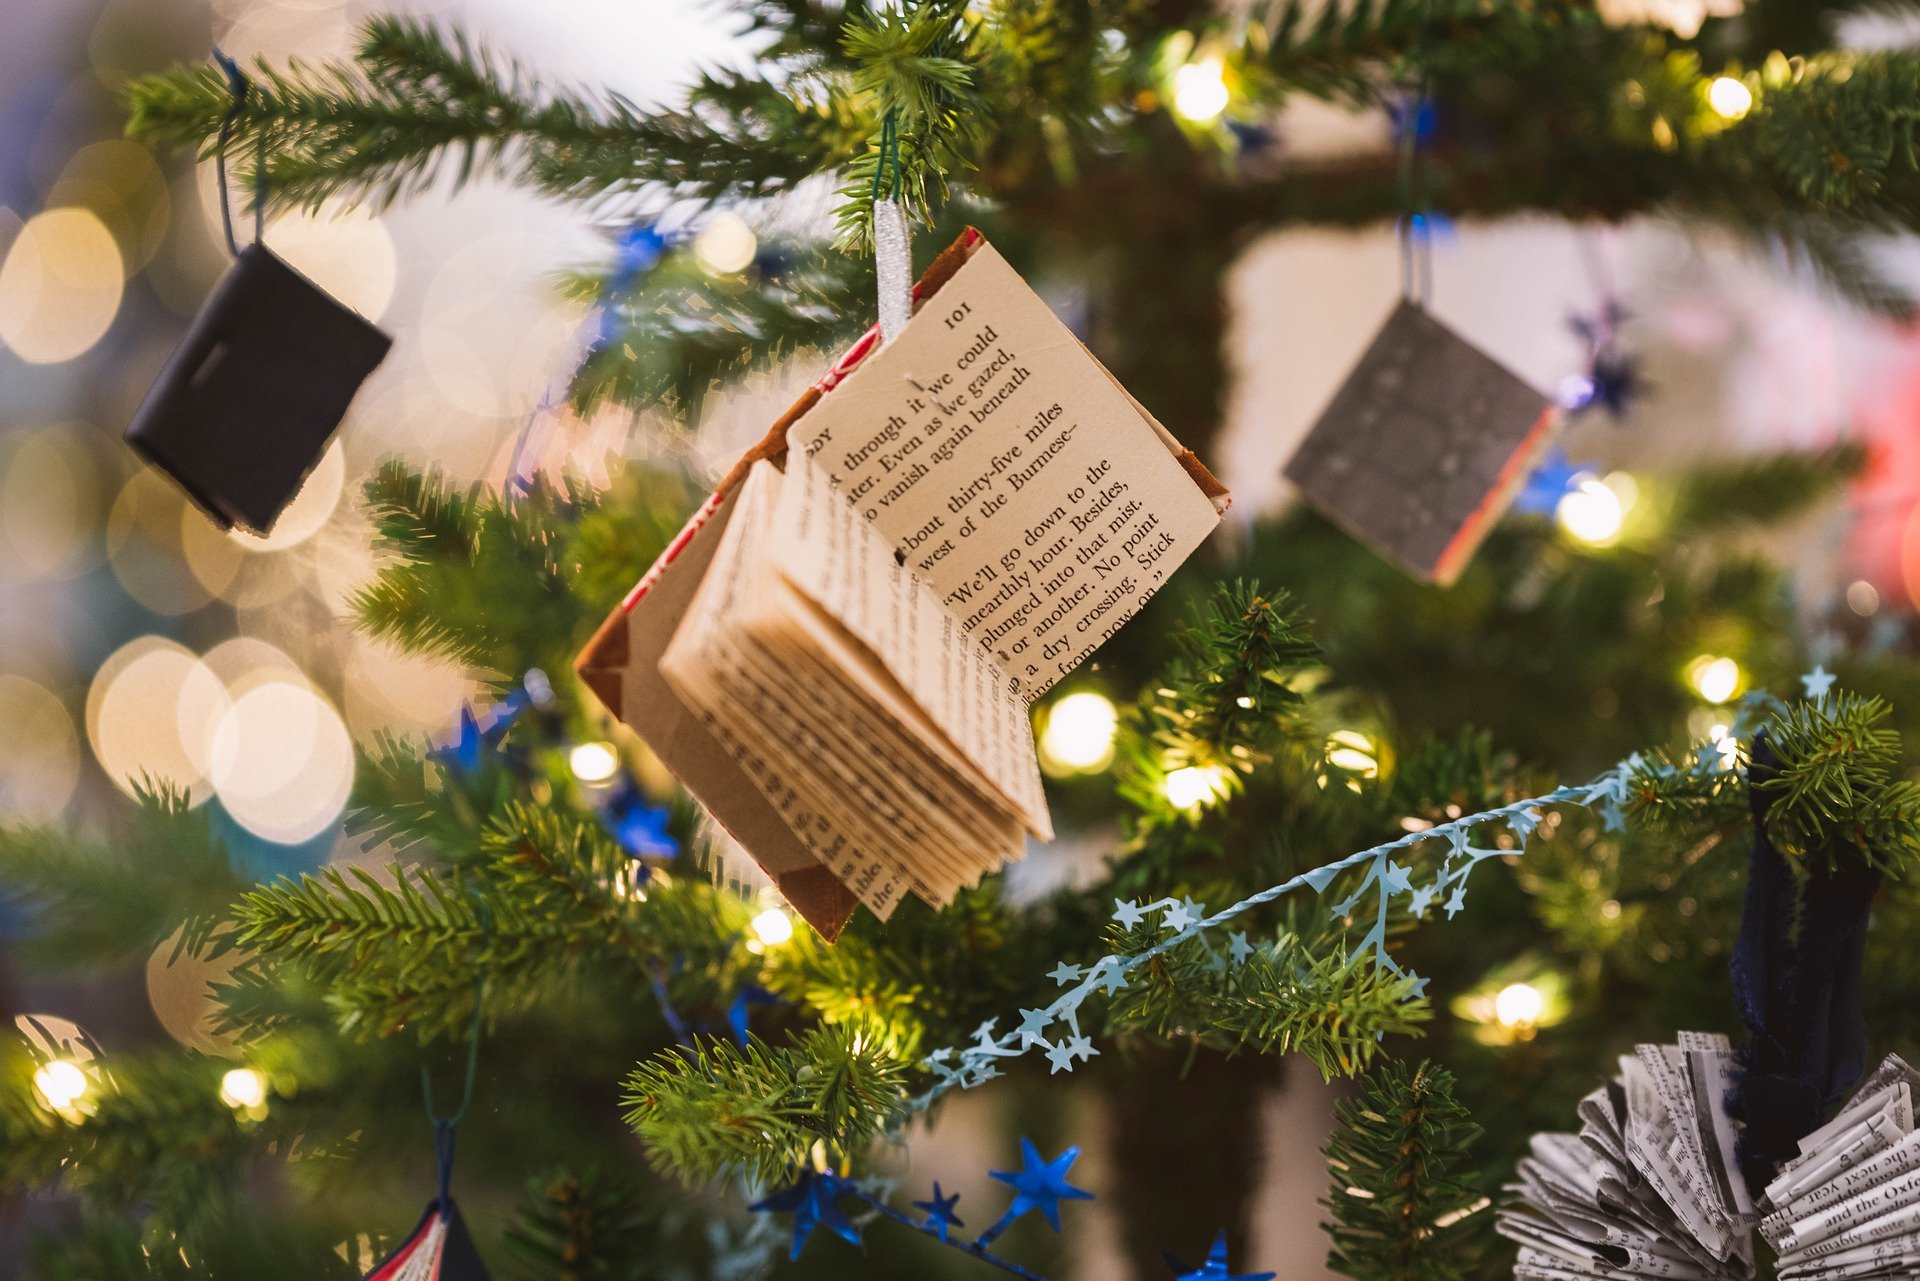 minikirja, kuusenkoriste, joulukuusi. miniature book, decorations, xmas tree.